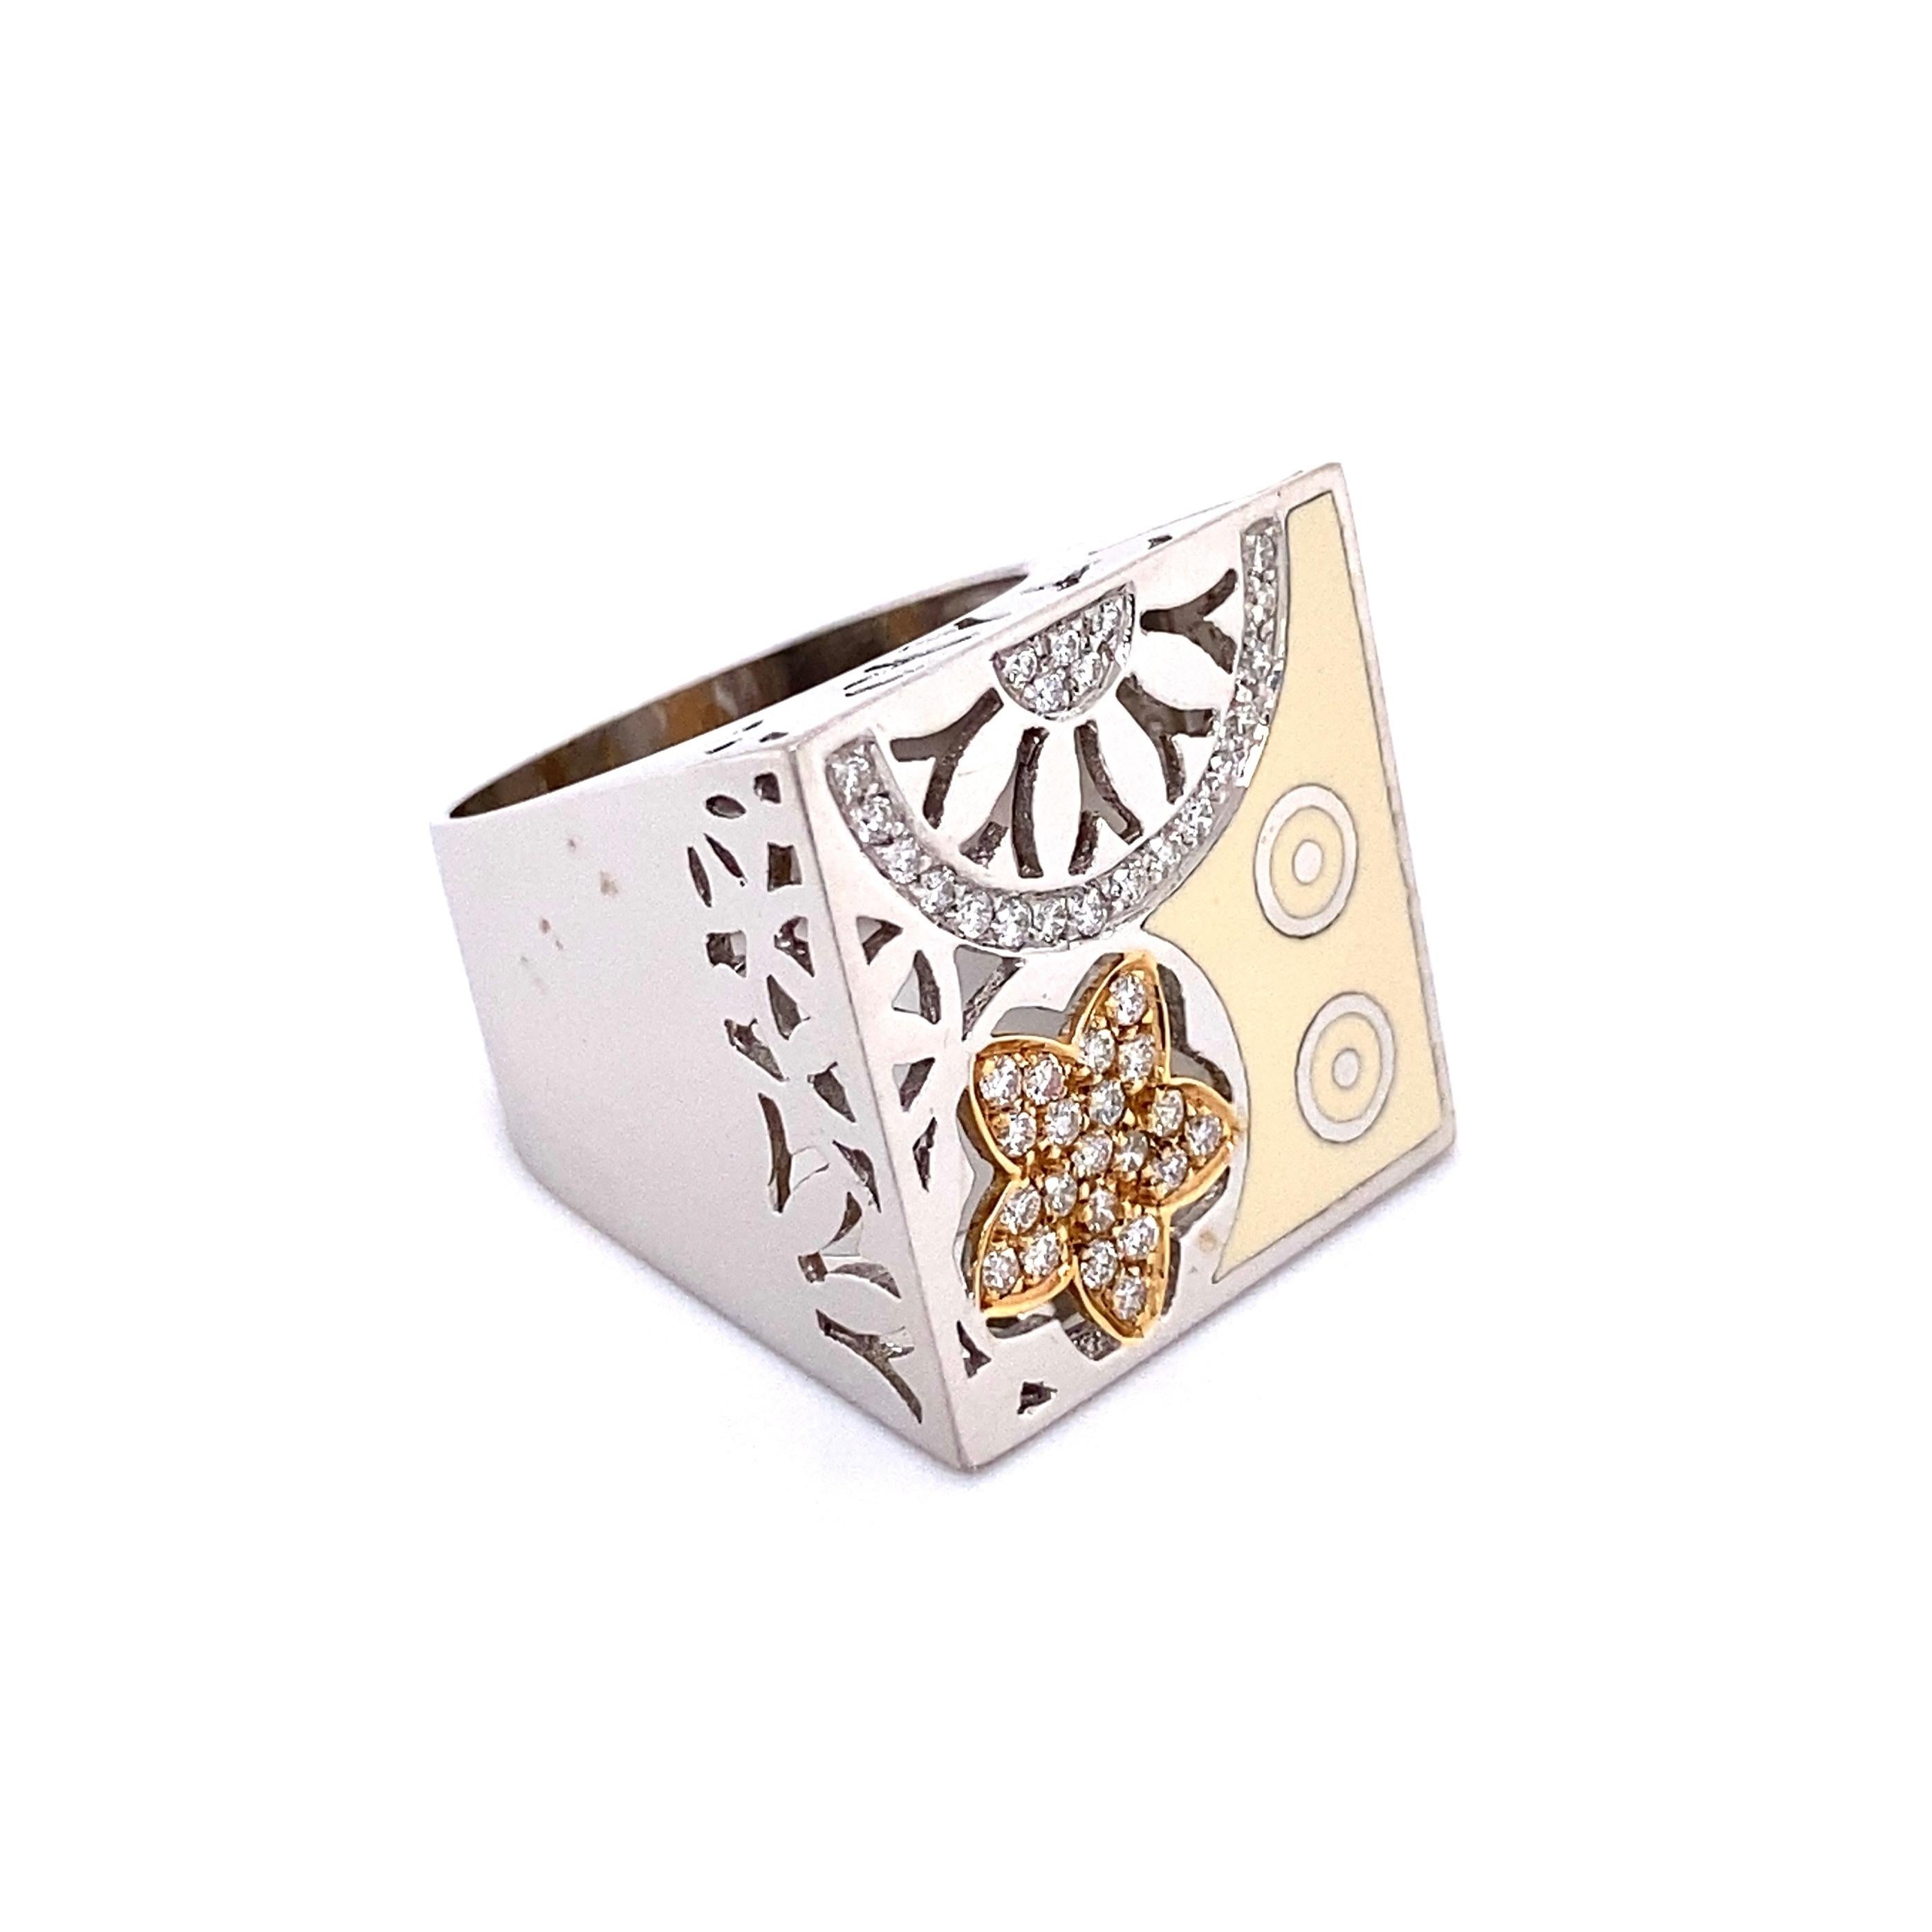 Fabuleux unique Nouvelle Bague  India Preziosa Design. Étincelle des diamants ronds de taille Brilliante sertis à la main, approx.  0,45tcw, complètent magnifiquement l'émail de cette bague en or blanc 18K réalisée à la main.  Dimensions : 1.04